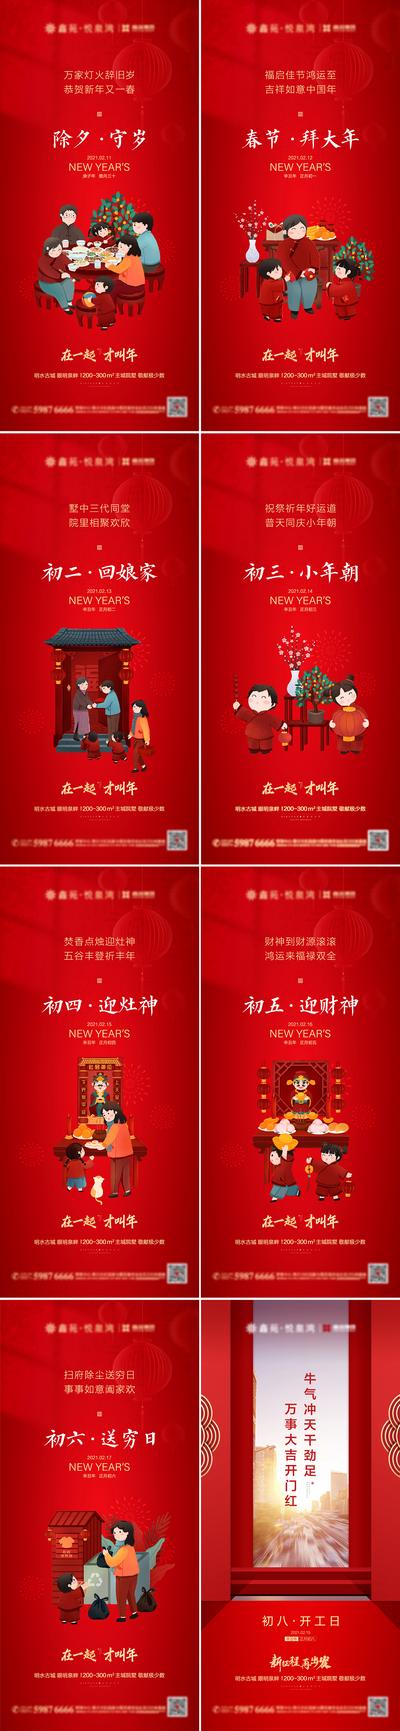 南门网 海报 房地产 中国传统节日 春节 除夕 年俗 插画 系列